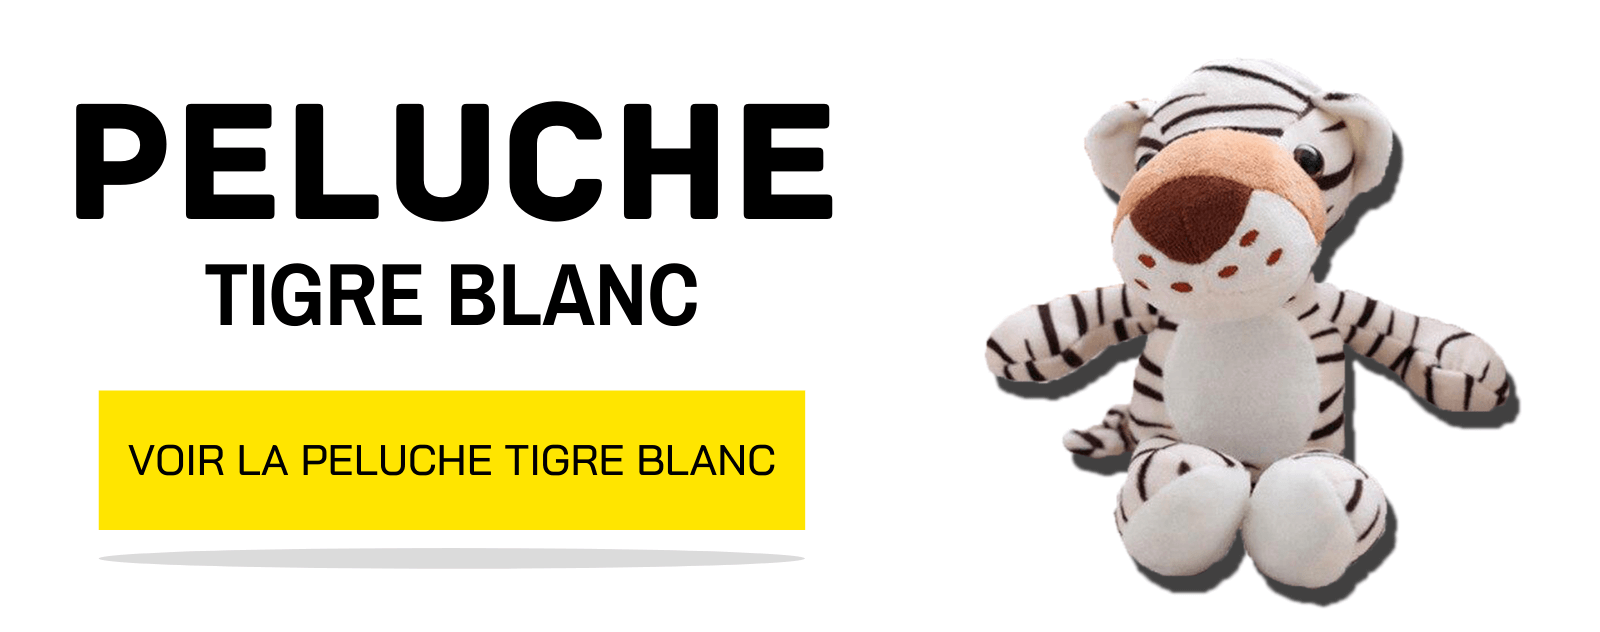 Peluche Tigre Blanco